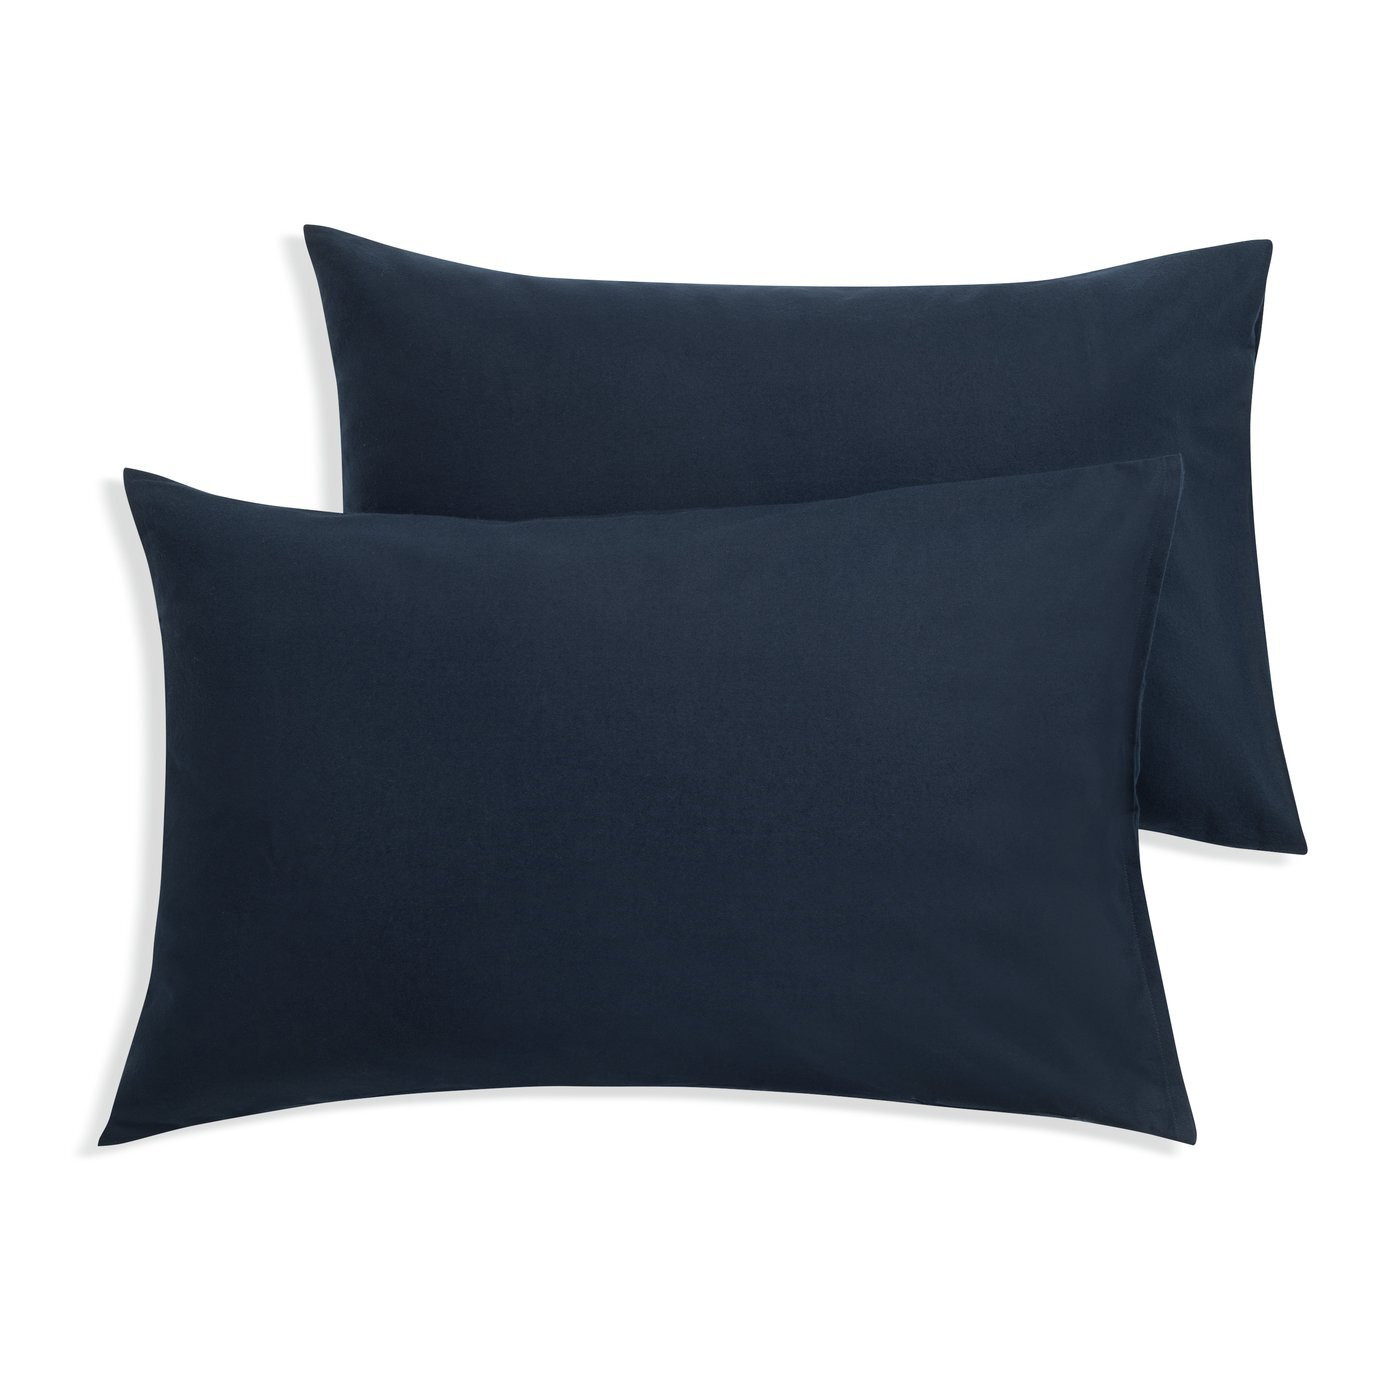 Habitat Brushed Cotton Standard Pillowcase Pair - Navy - image 1